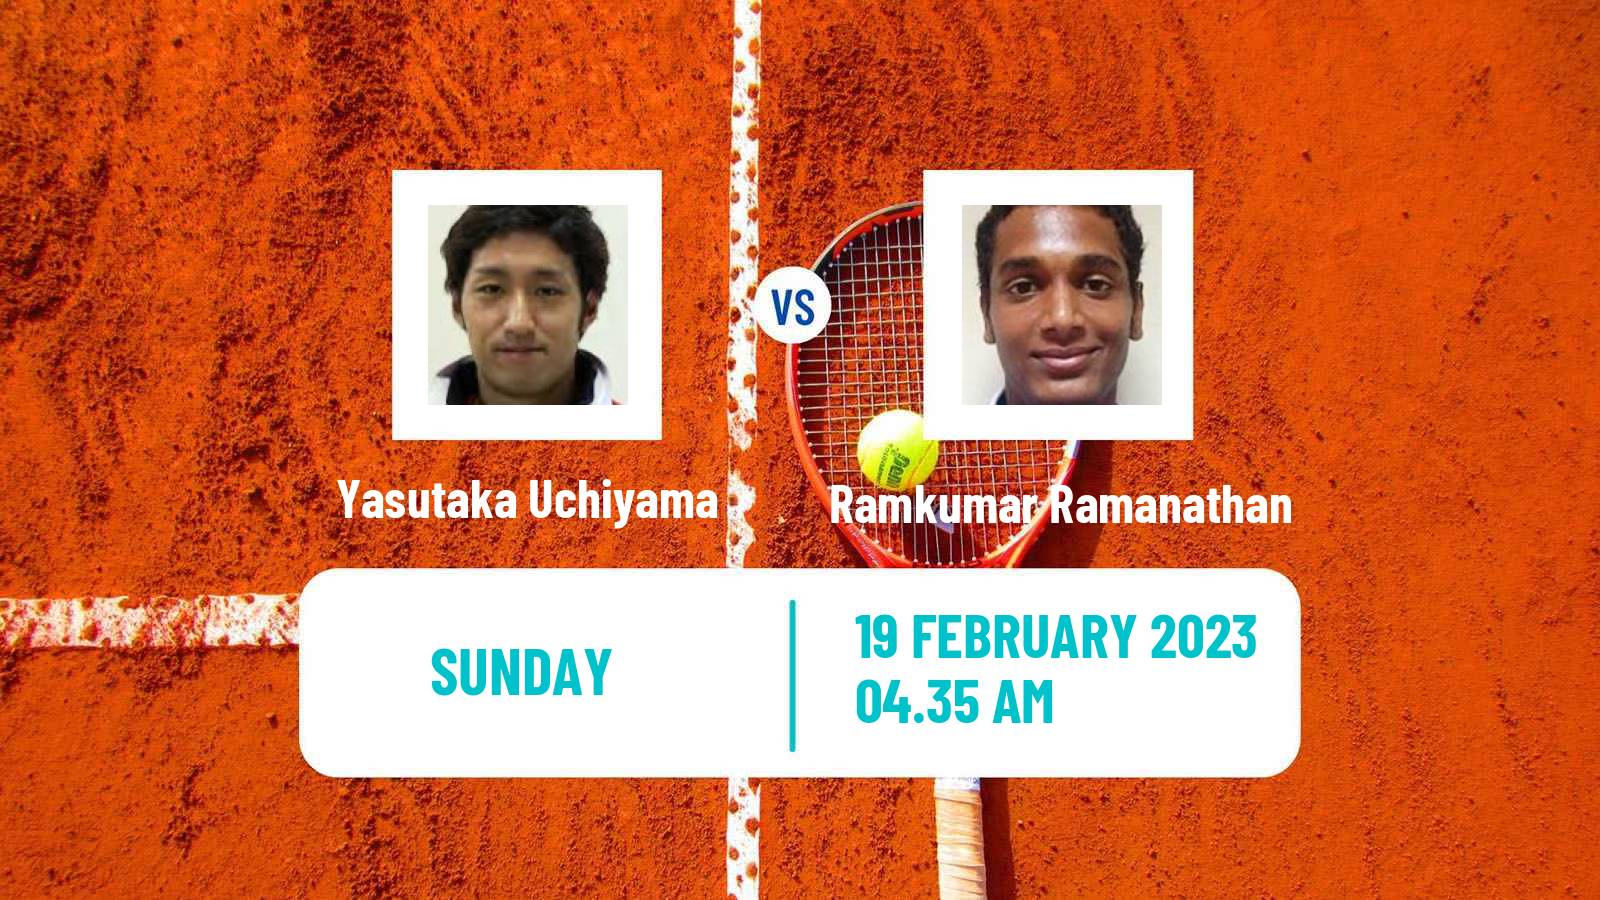 Tennis ATP Challenger Yasutaka Uchiyama - Ramkumar Ramanathan